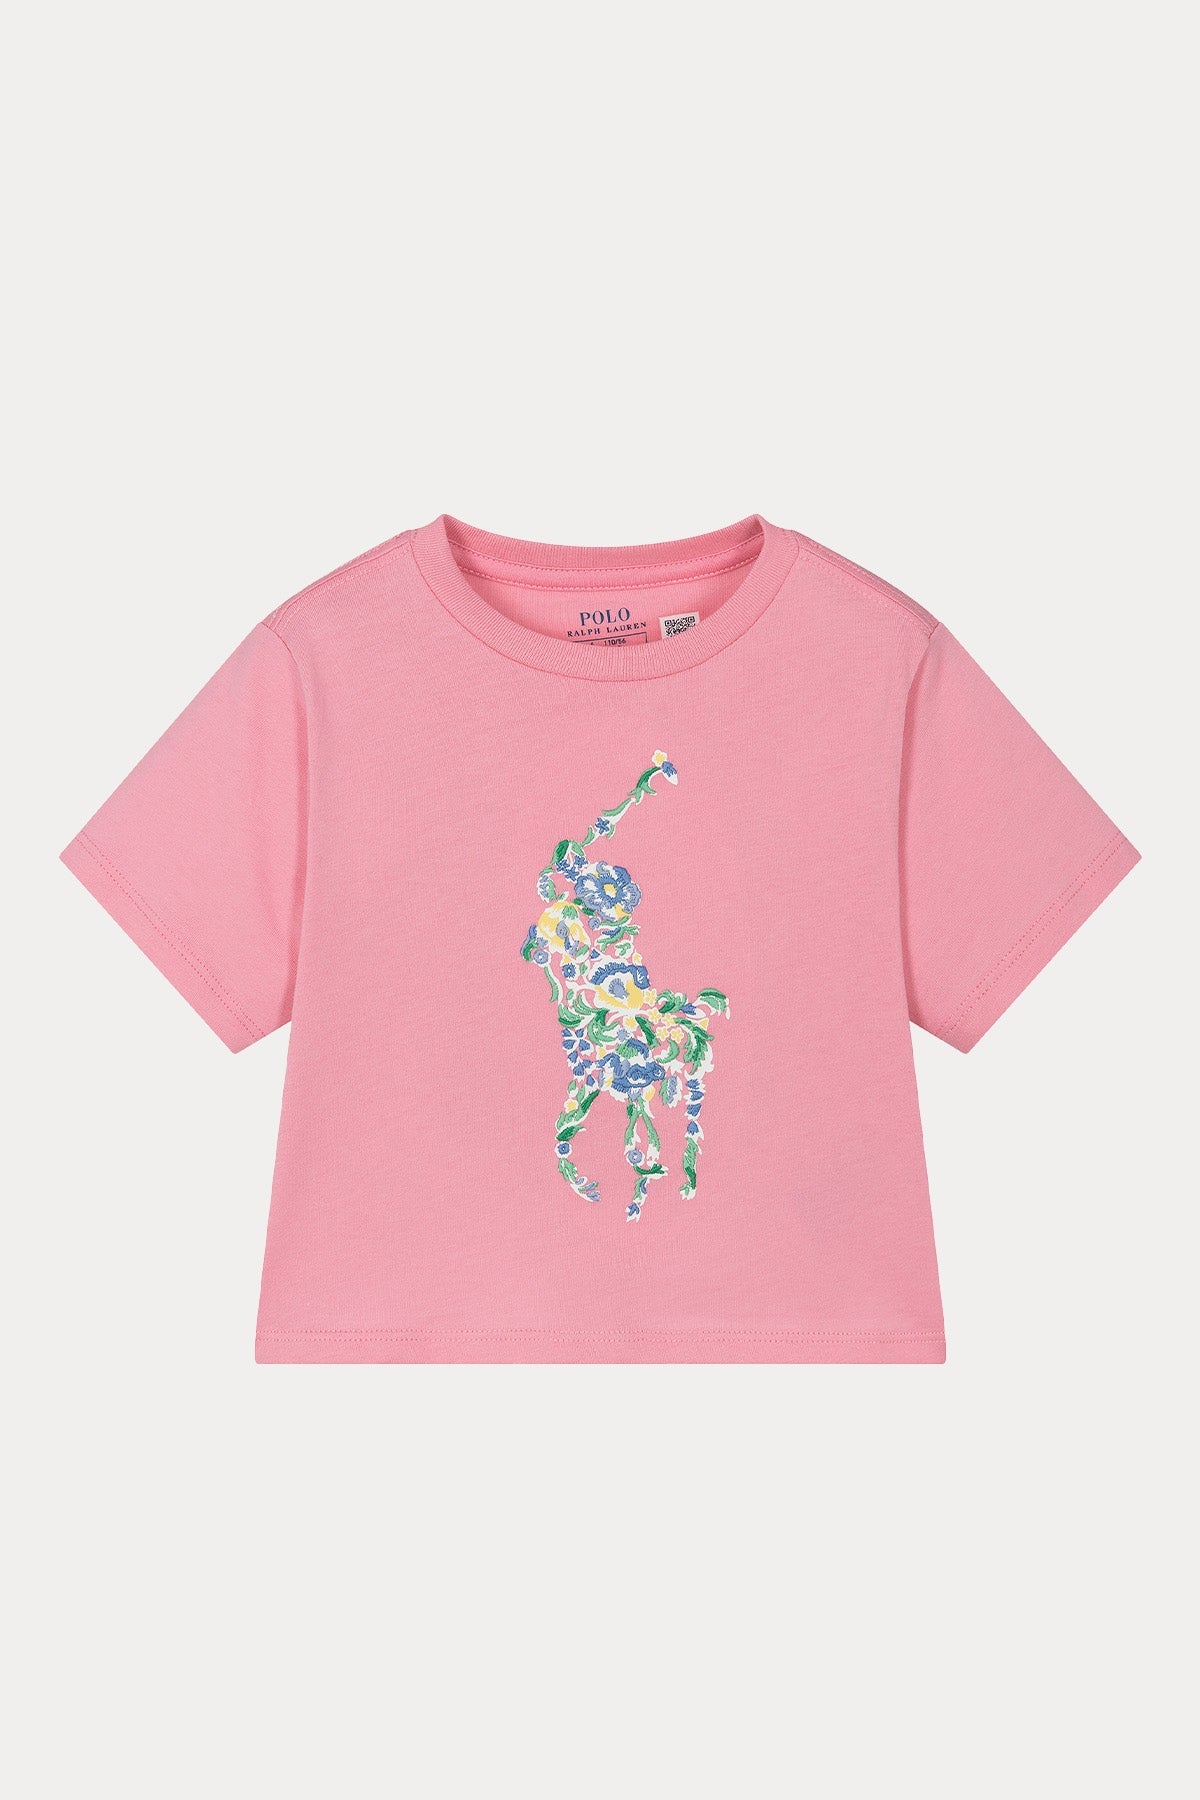 Polo Ralph Lauren Kids 4-5 Yaş Kız Çocuk Big Pony Logolu Crop T-shirt